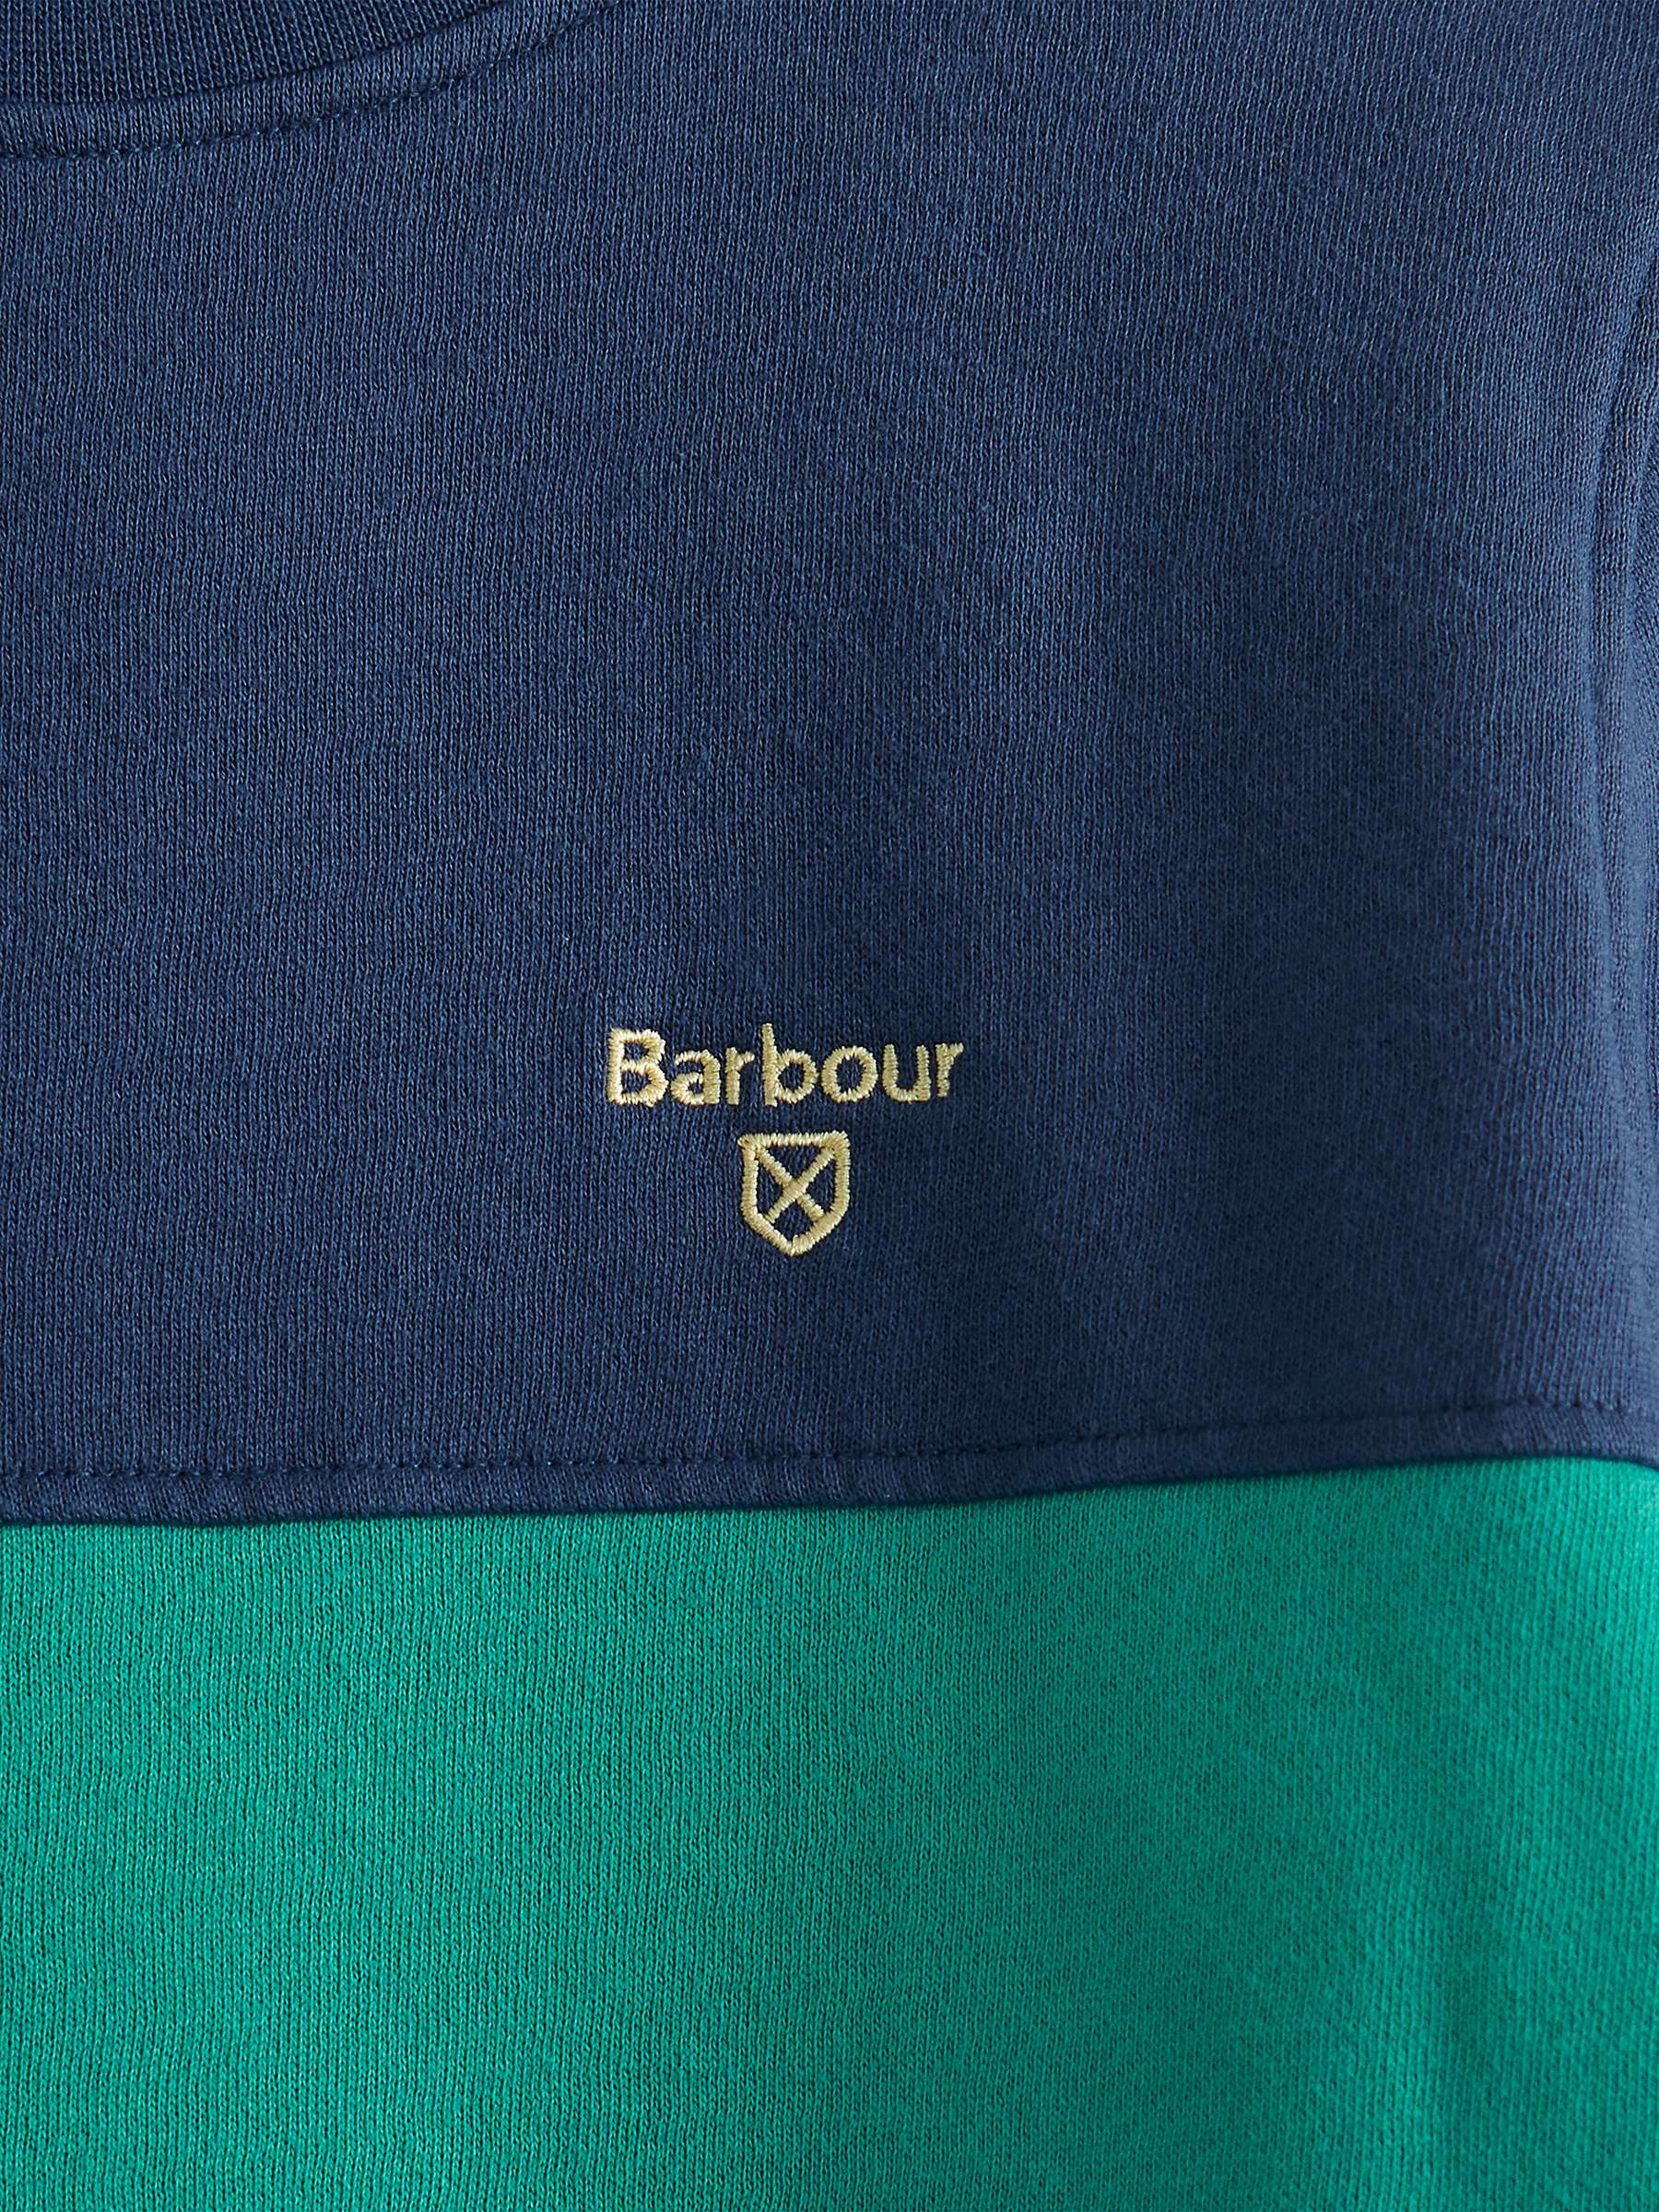 Buy Barbour Kids' Benjamin Crew Neck Sweatshirt, Navy/Green Online at johnlewis.com